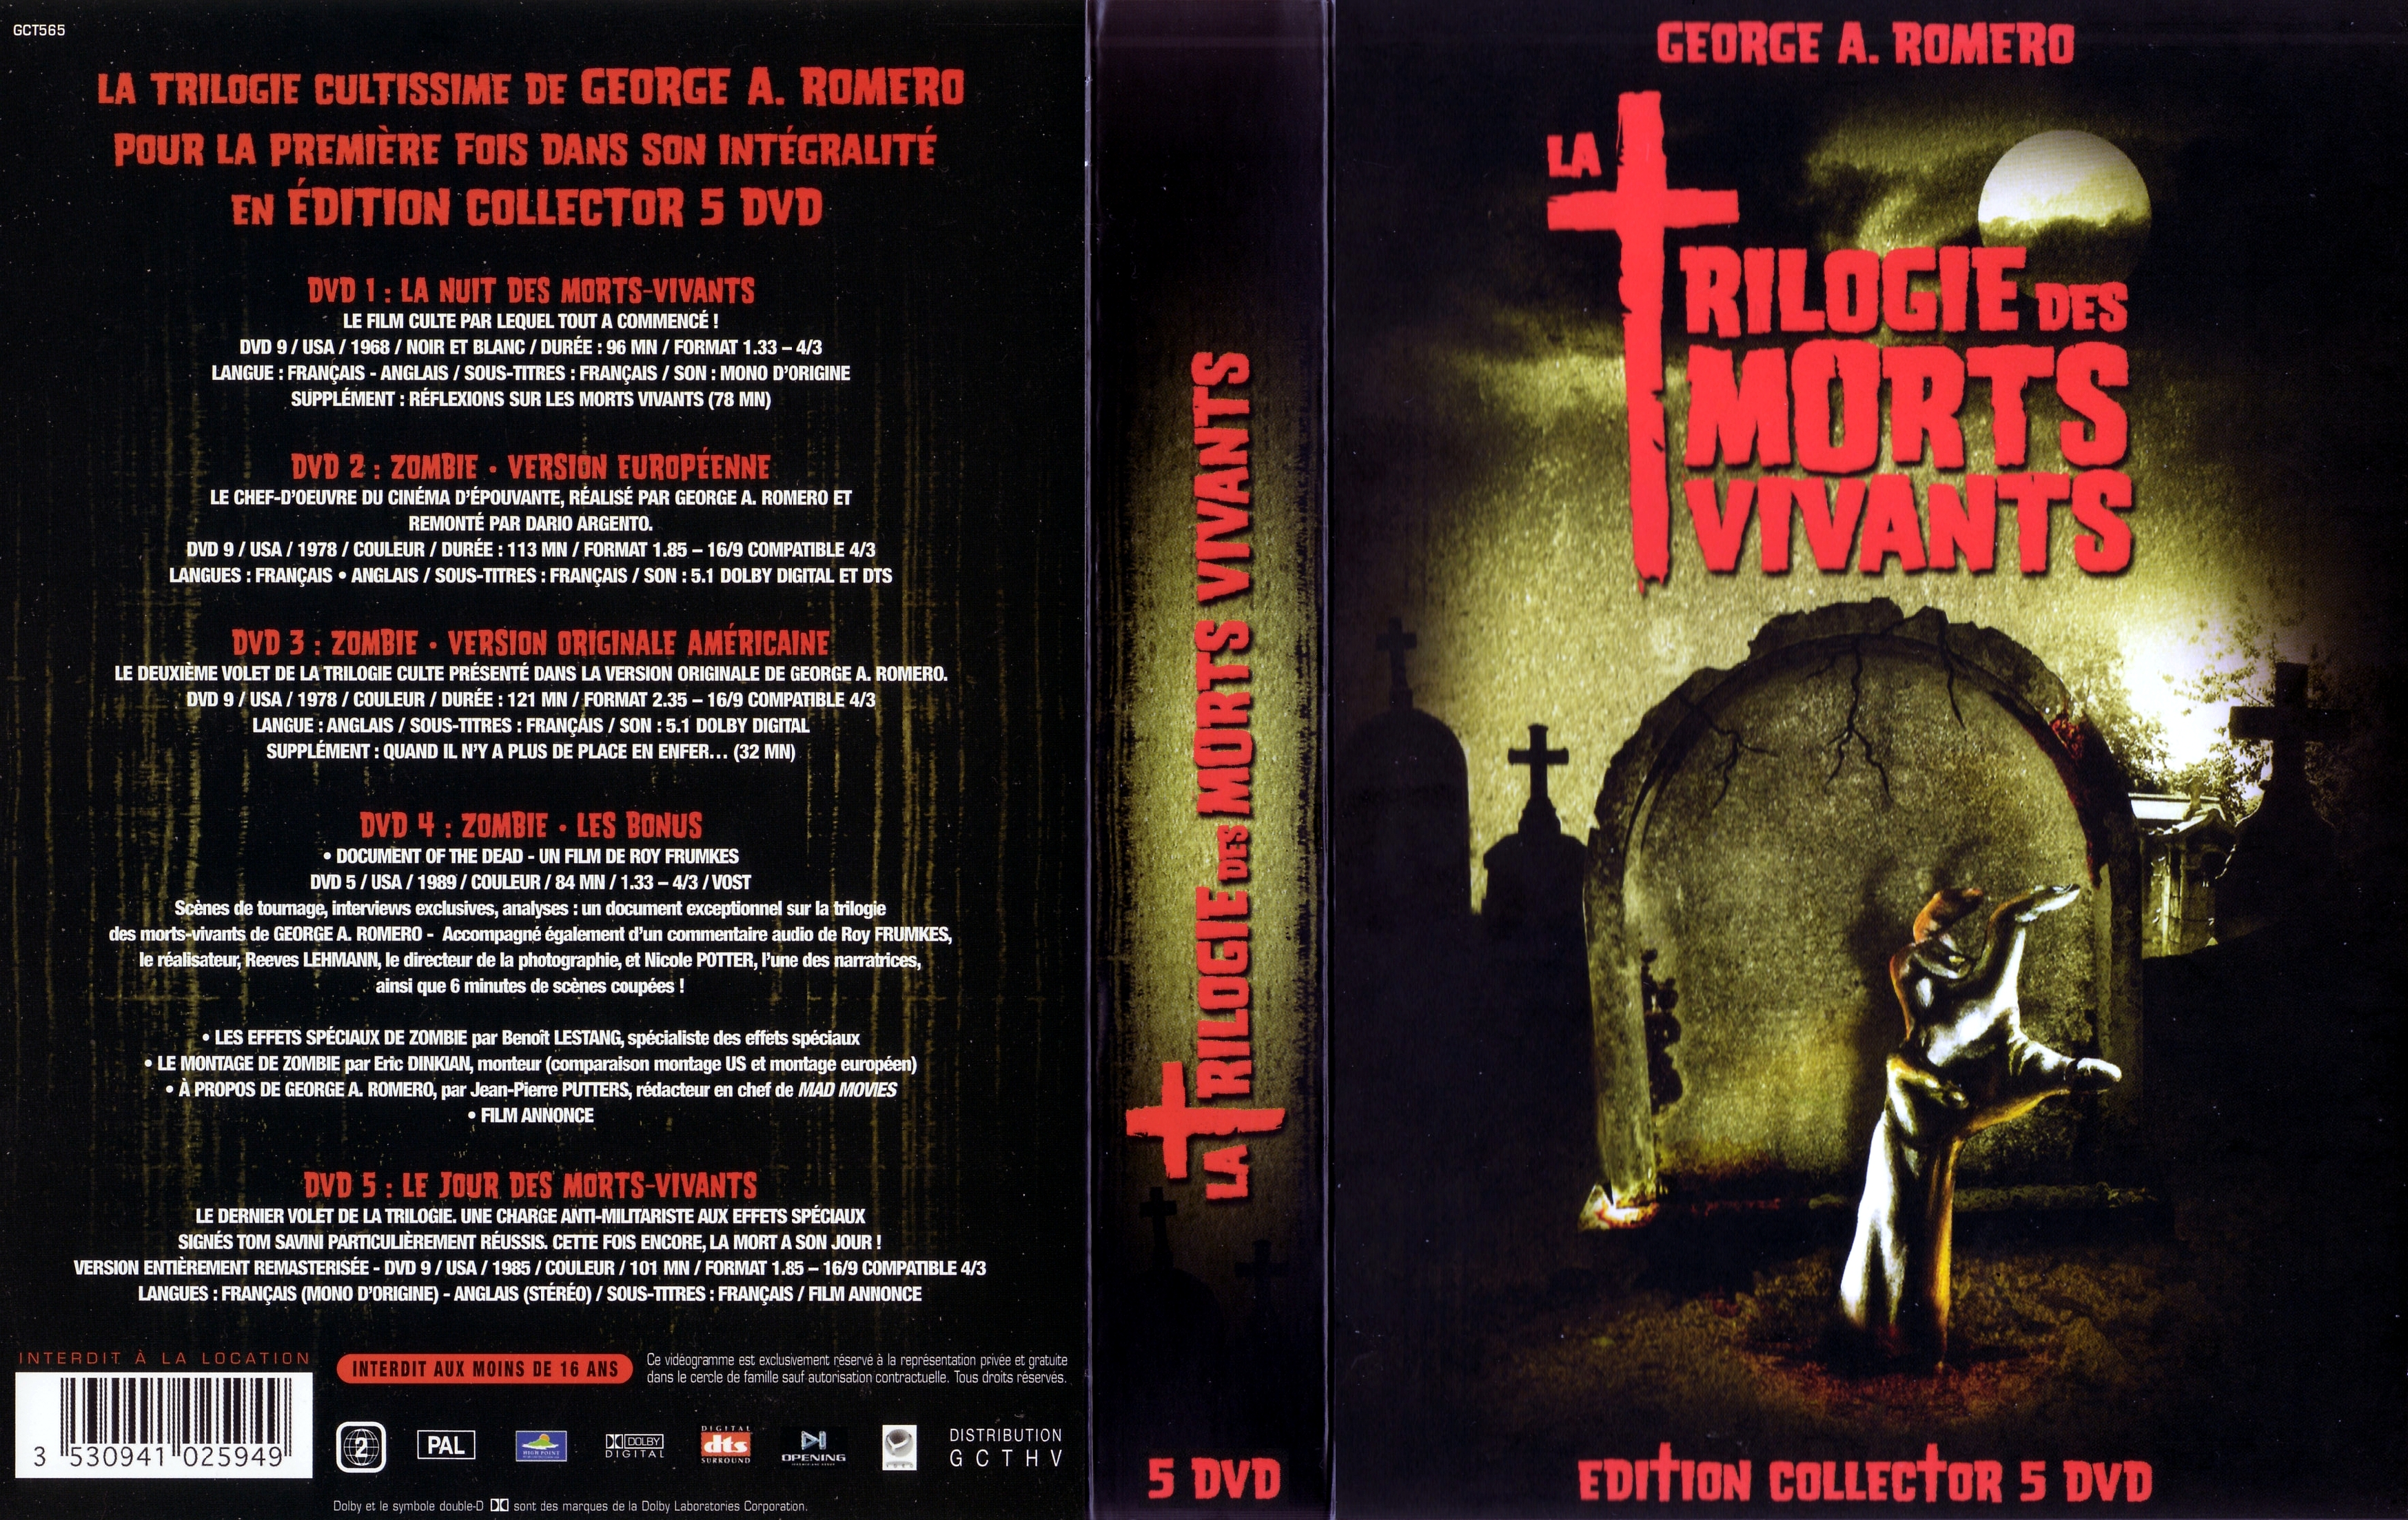 Jaquette DVD La trilogie des morts vivants